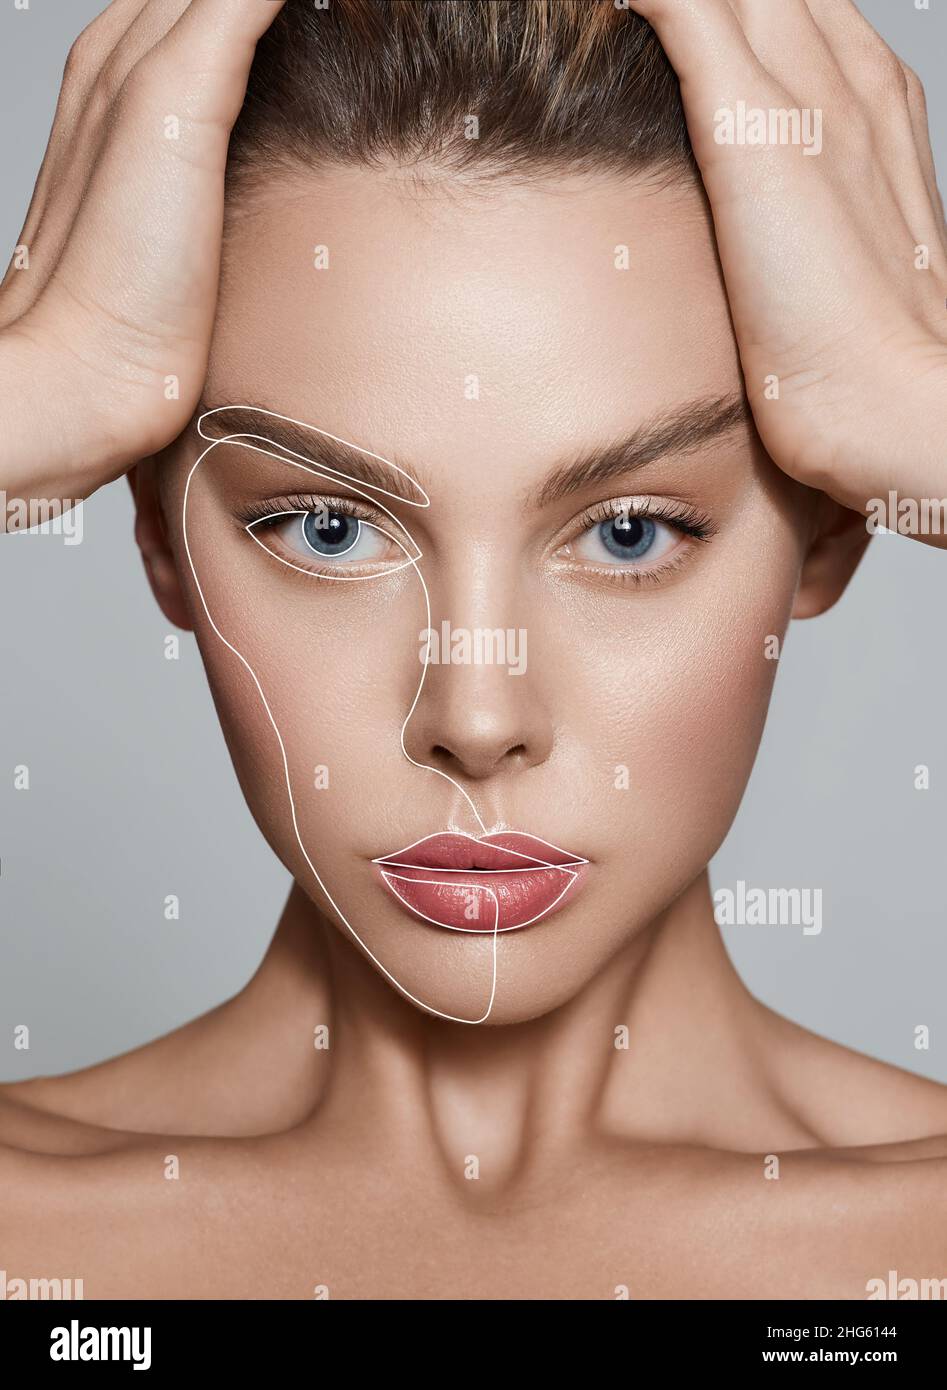 Cosmetologia estetica, cura del viso. Ritratto di bella donna con linee di sollevamento sulla pelle Foto Stock